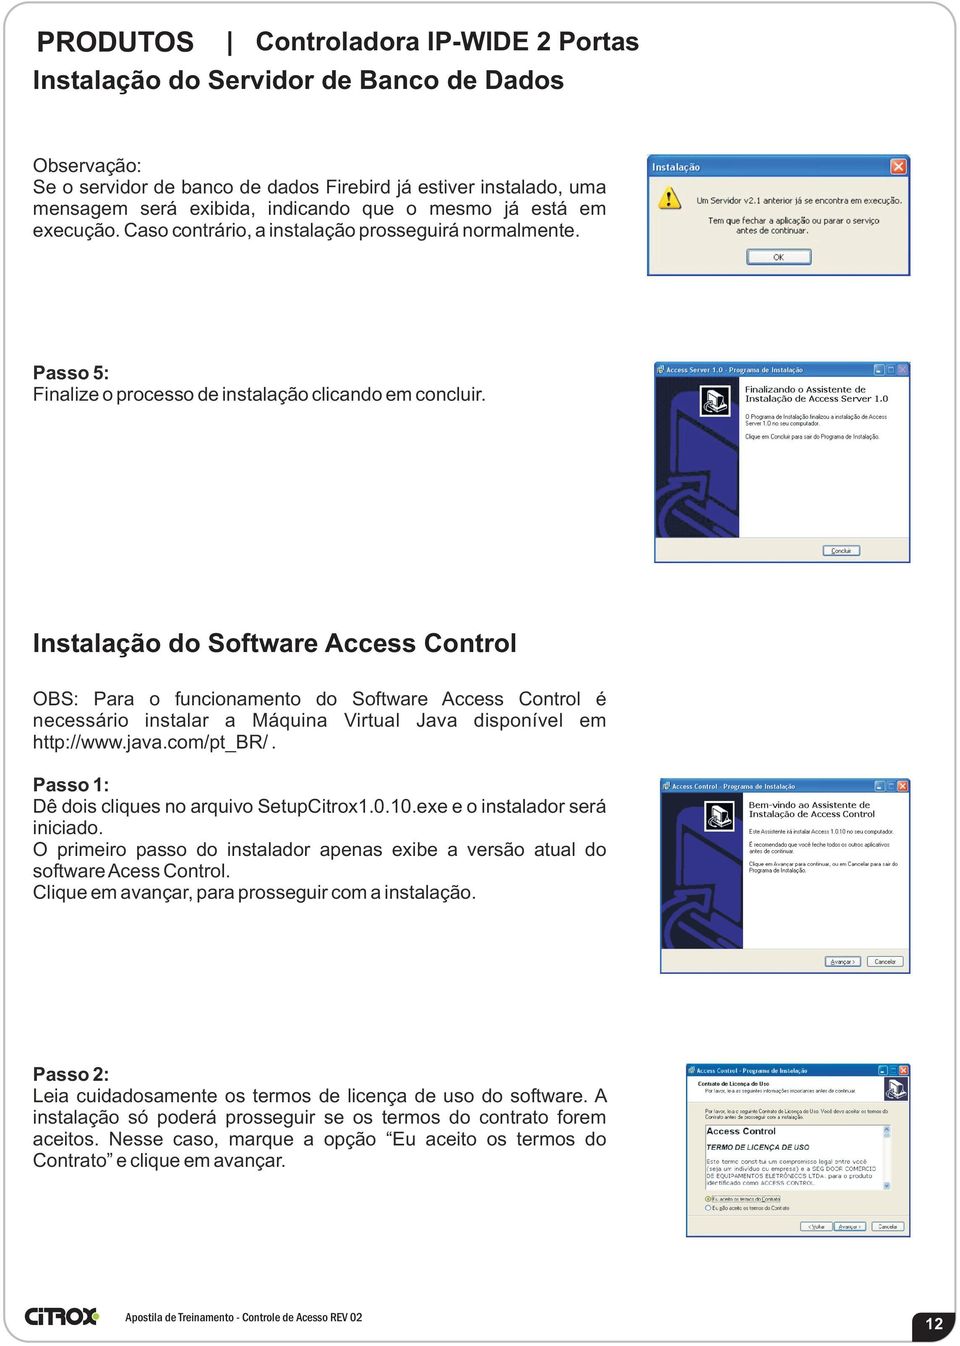 Instalação do Software Access Control OBS: Para o funcionamento do Software Access Control é necessário instalar a Máquina Virtual Java disponível em http://www.java.com/pt_br/.